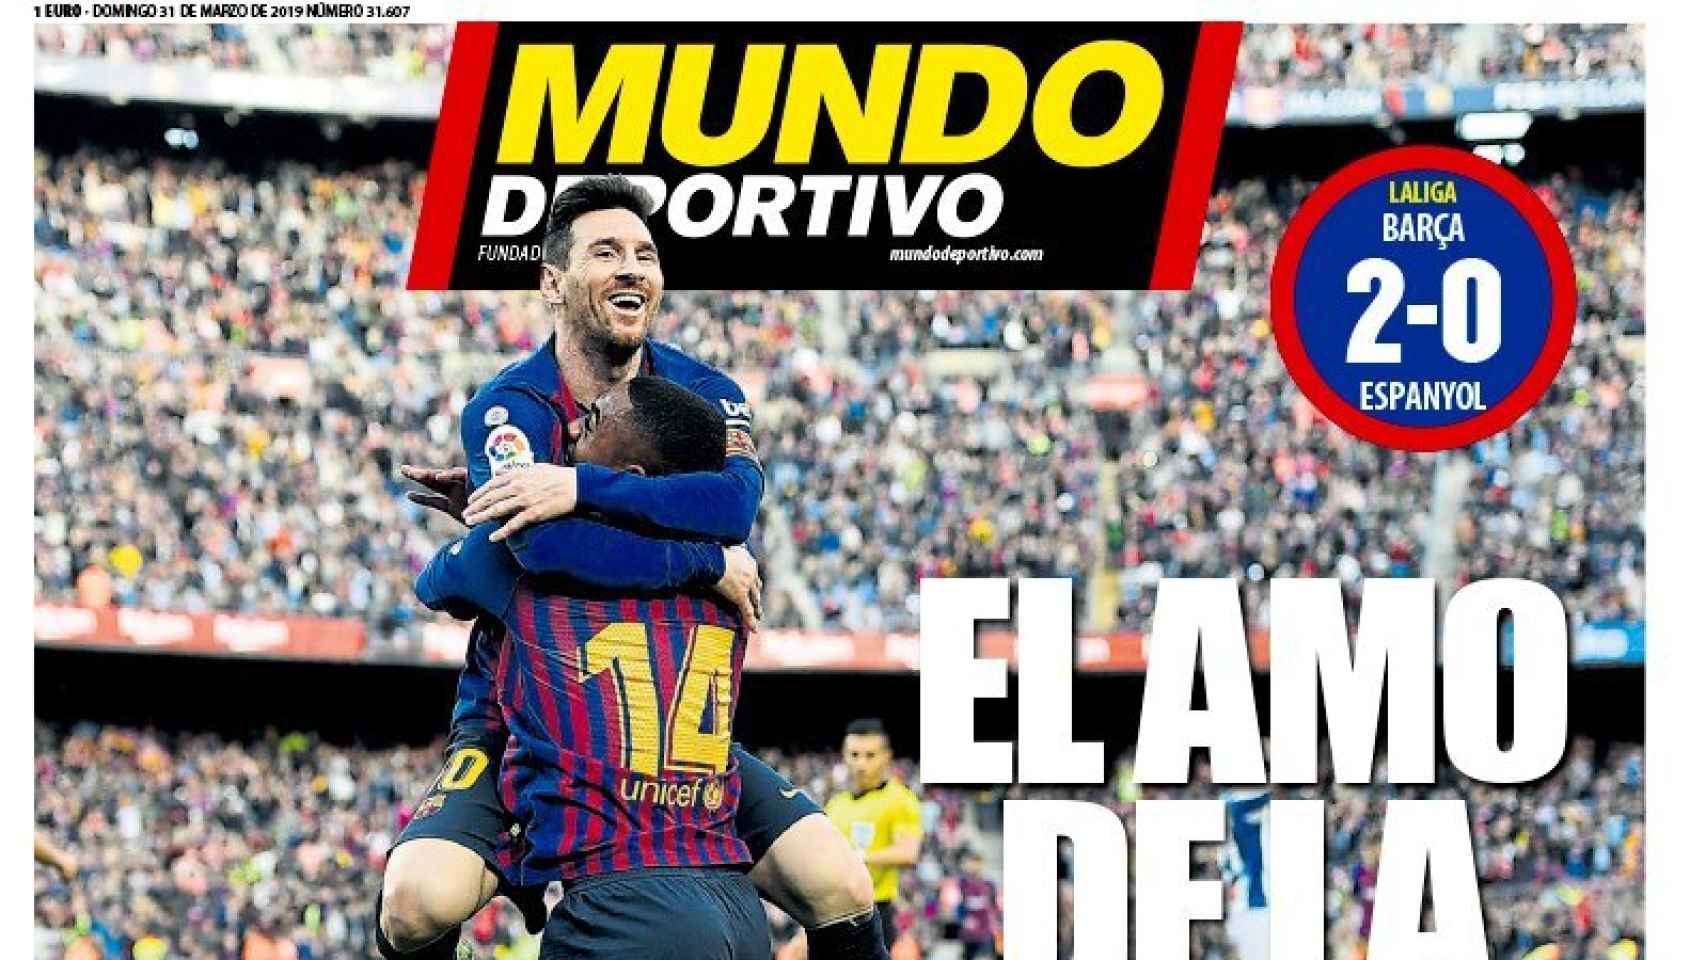 La portada del diario Mundo Deportivo (31/03/2019)